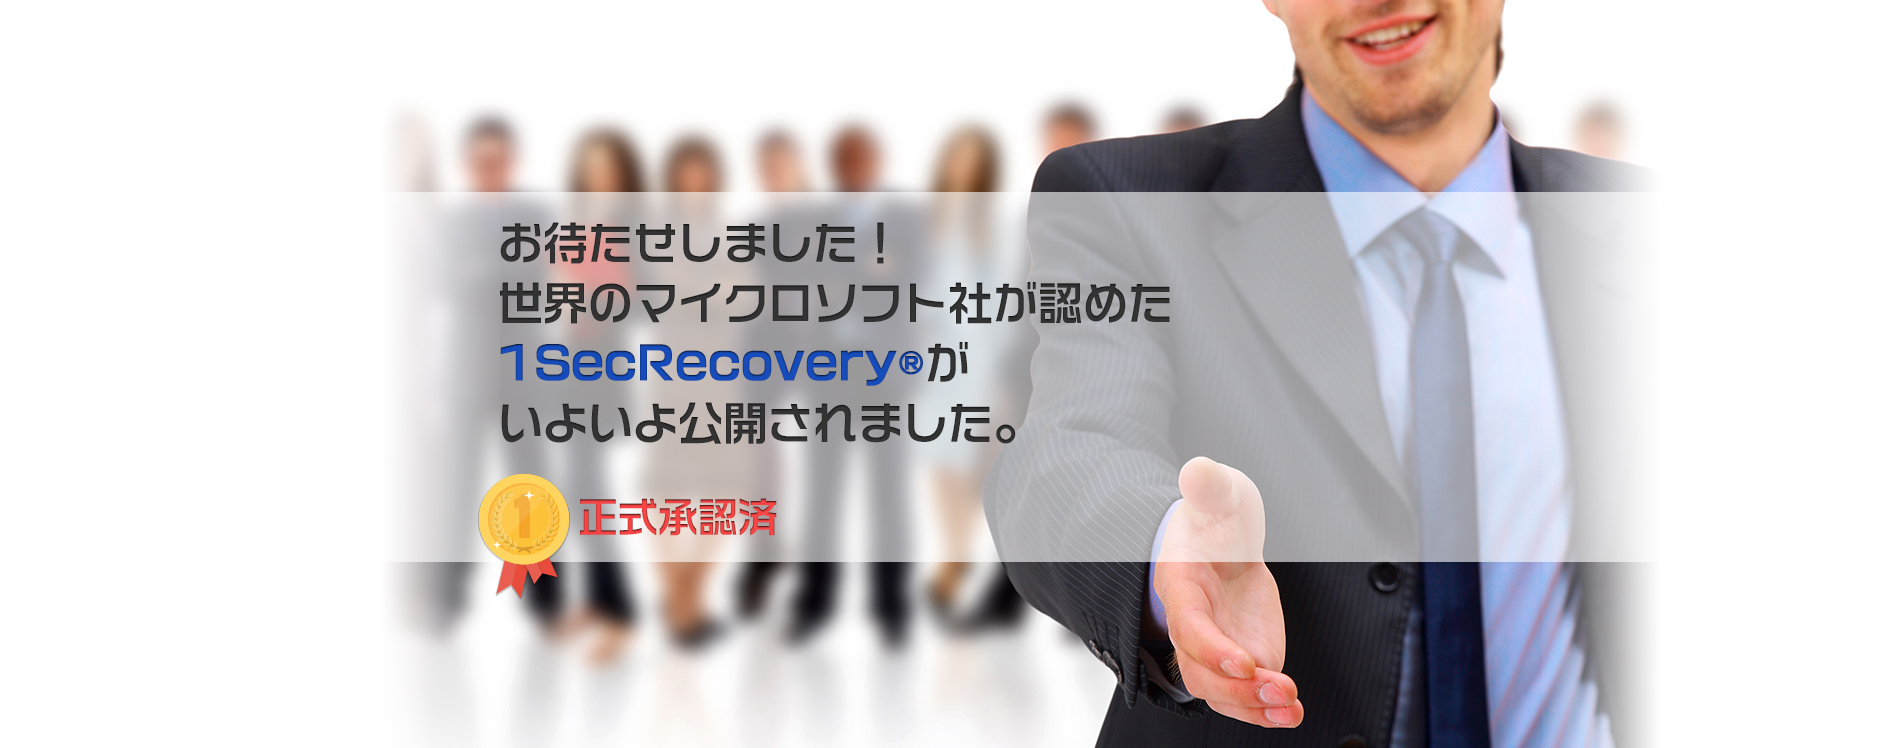 世界のマイクロソフト社が認めた1SecRecovery®が公開されました！